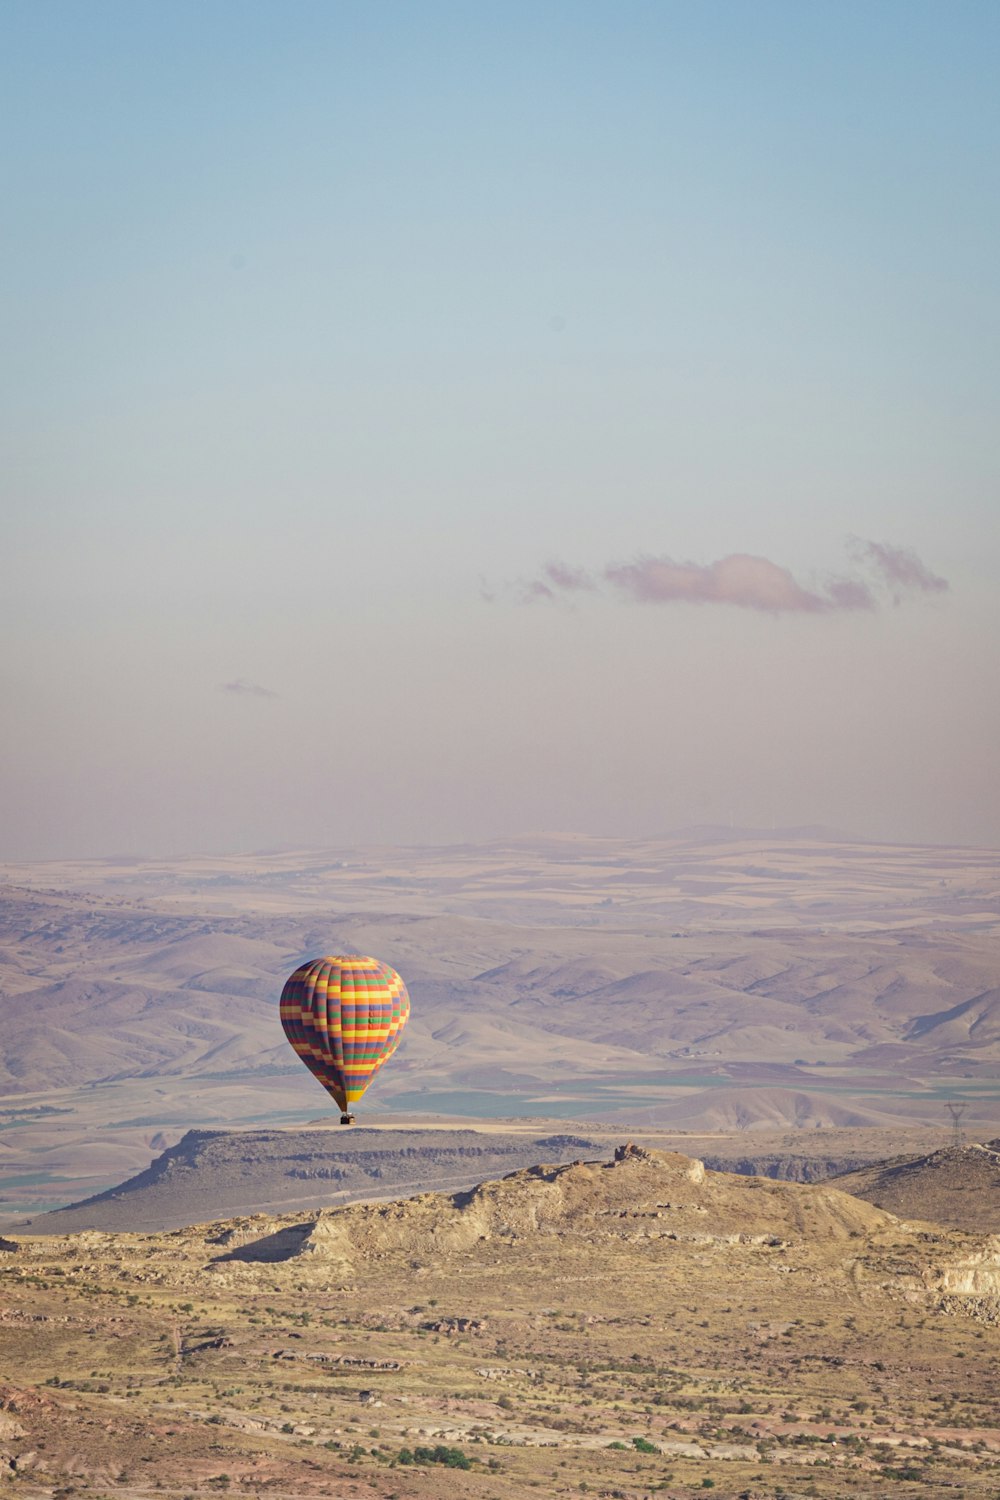 a hot air balloon flying over a desert